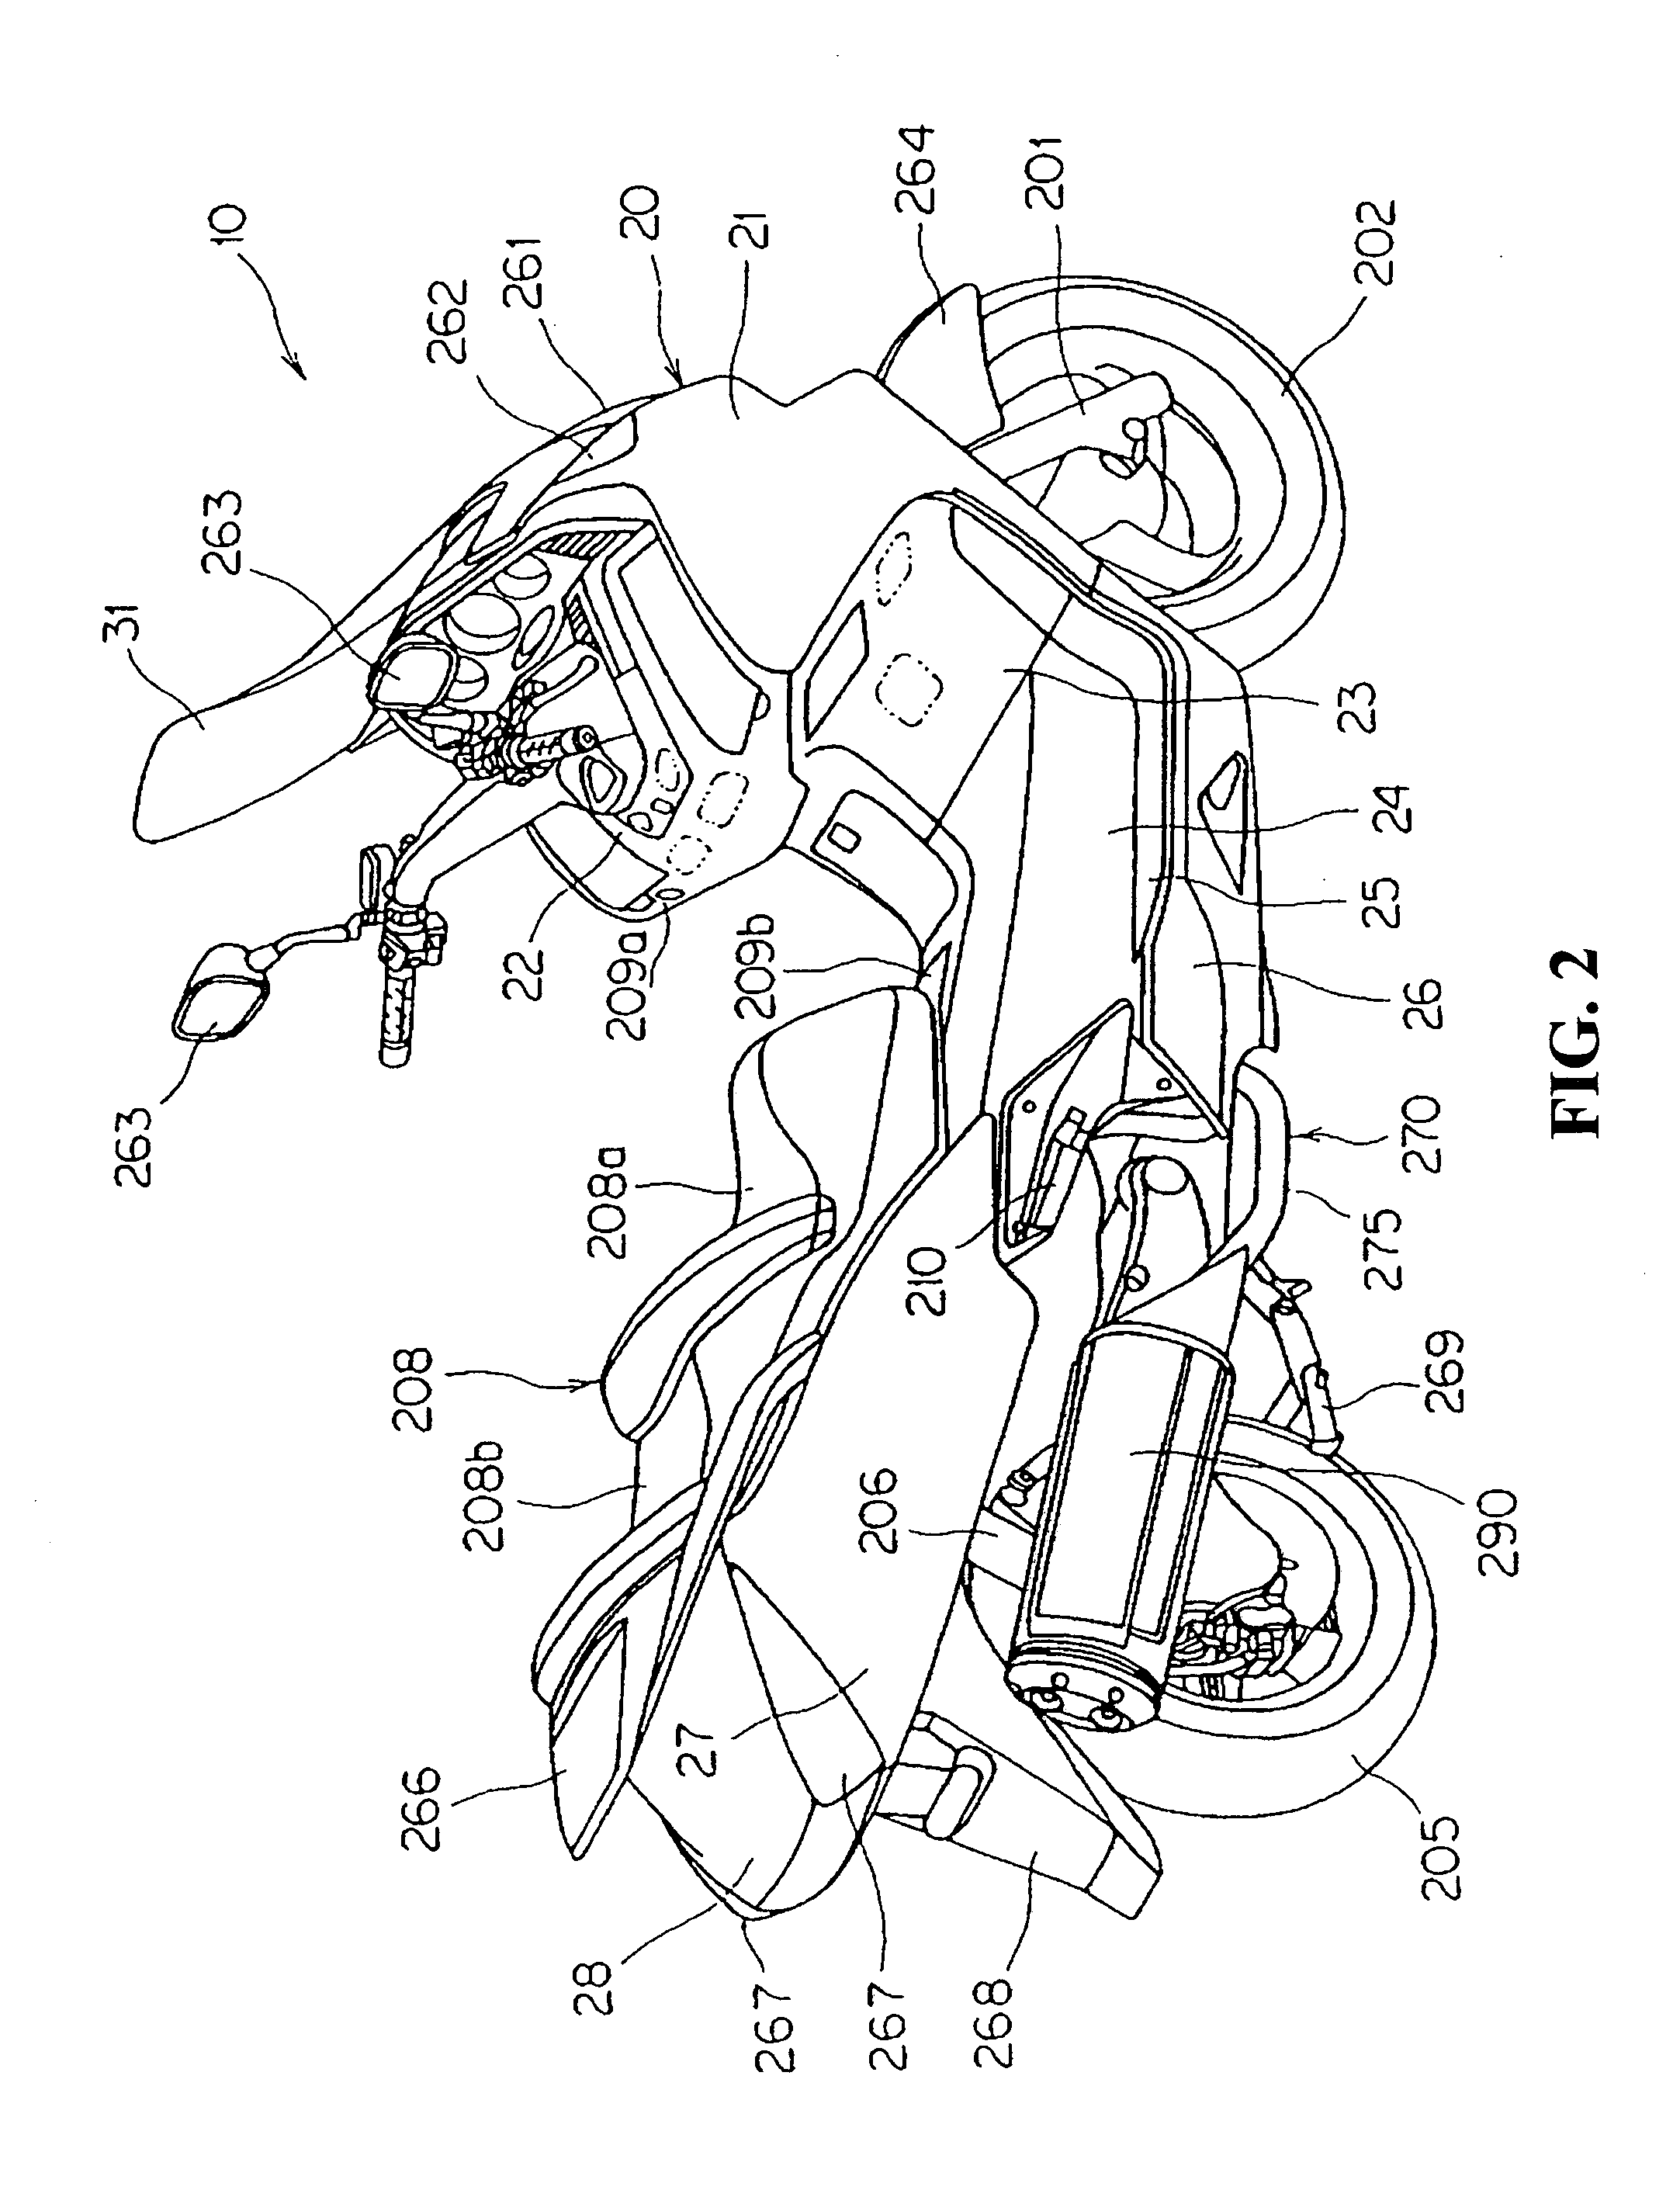 Catalyst arrangement construction of motorcycle